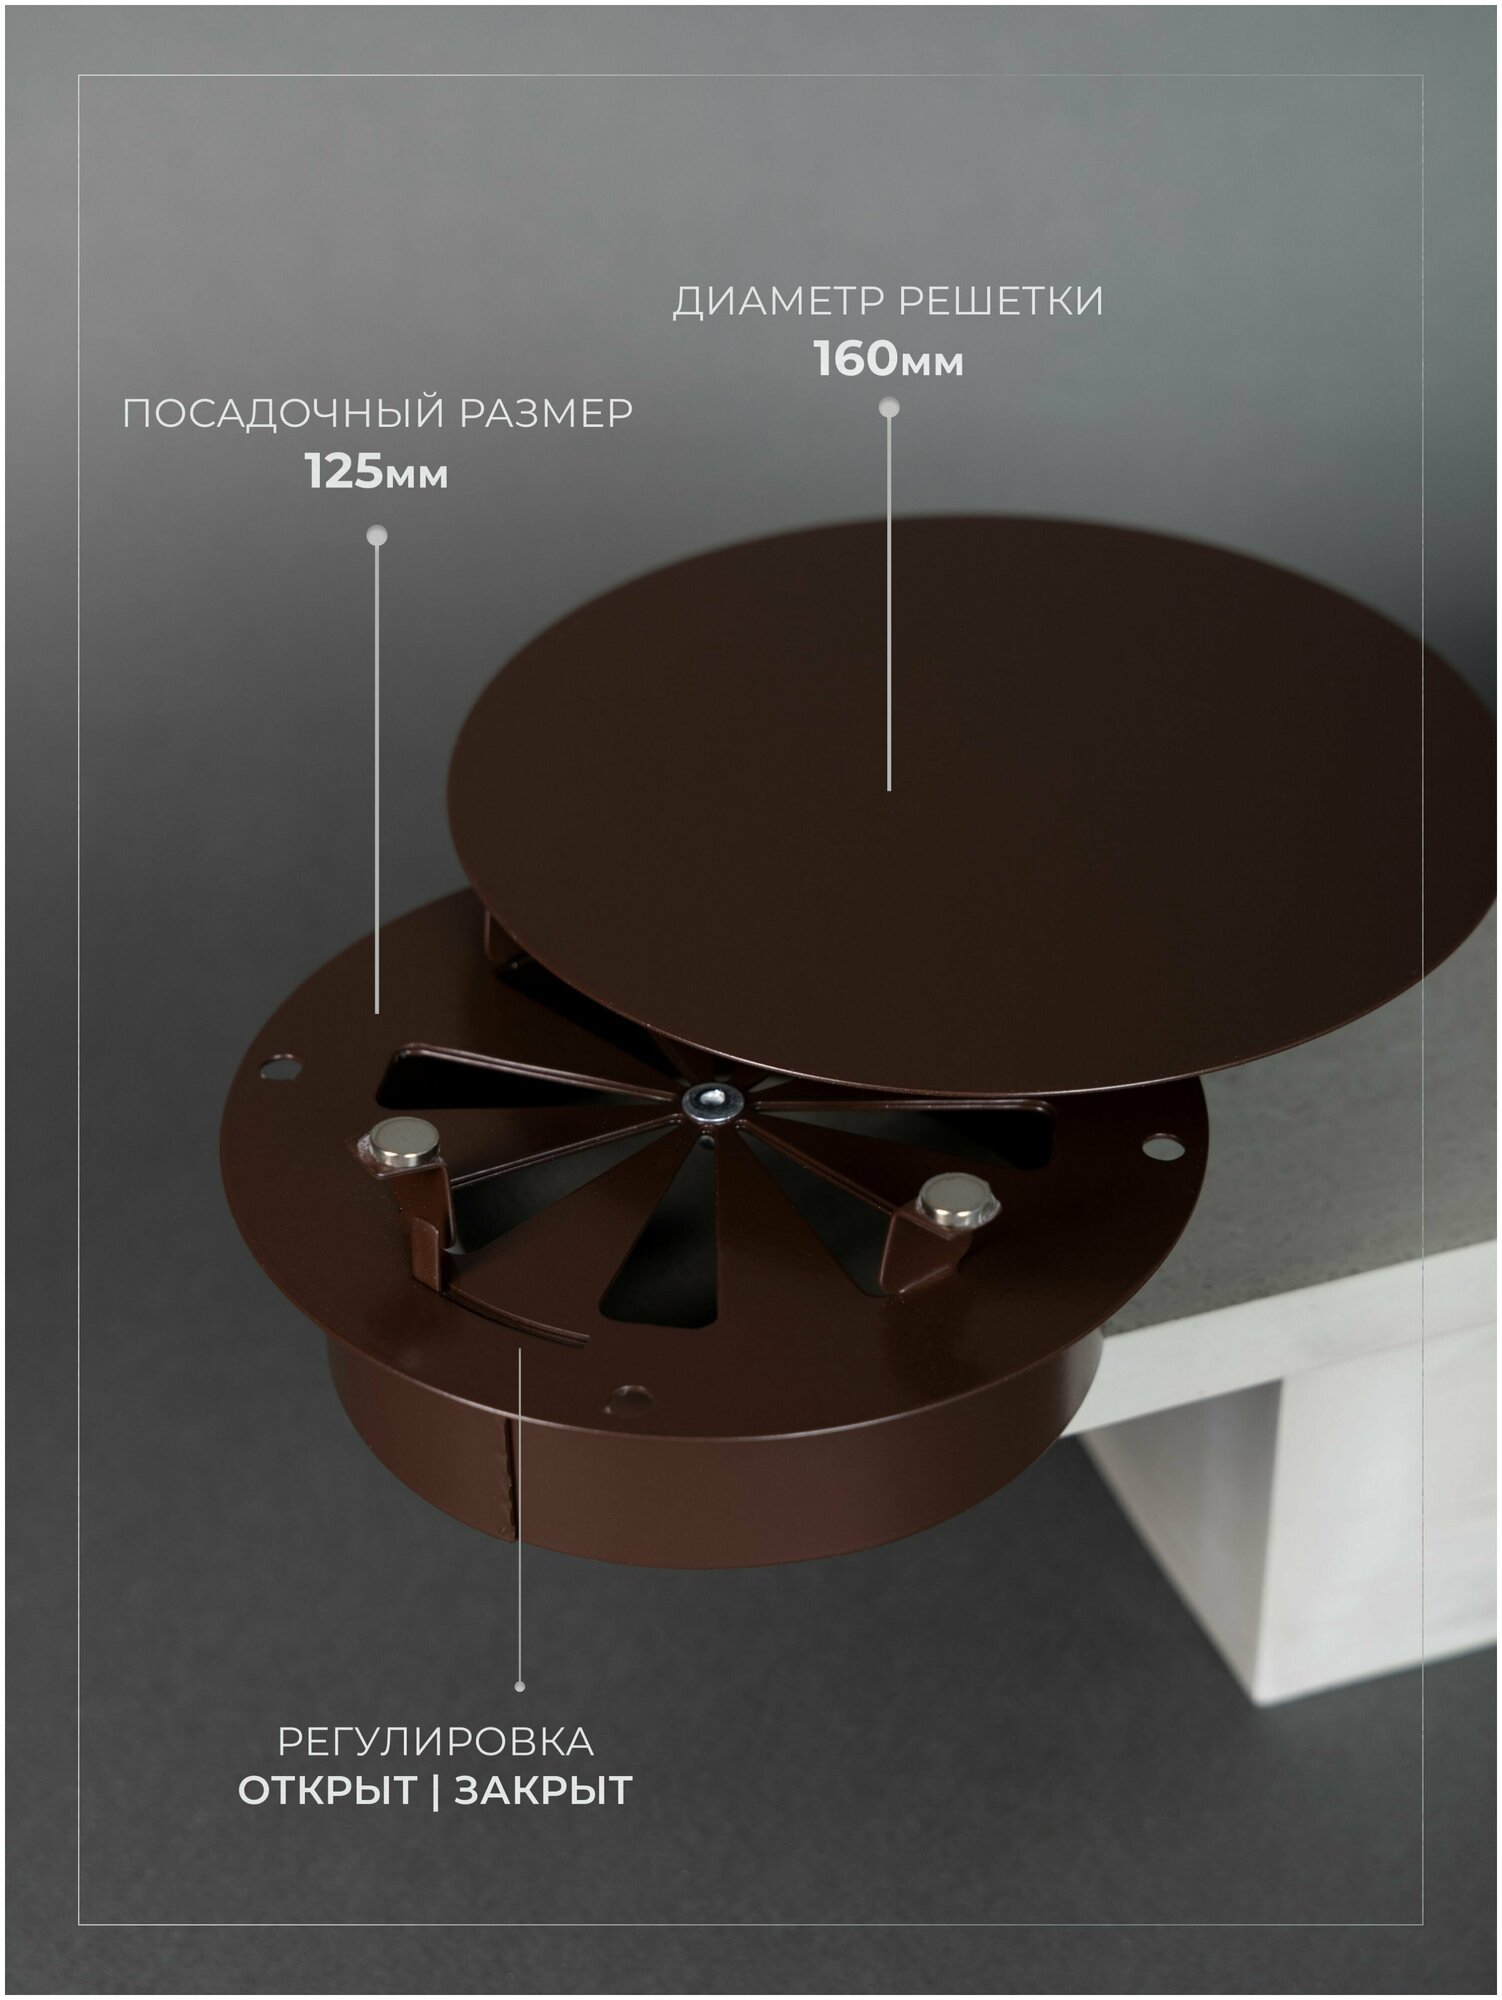 Вентиляционная решетка на магнитах (декоративный диффузор с регулировкой) 125x125 мм. (ДК125 коричневая), металлическая, производитель Родфер - фотография № 2